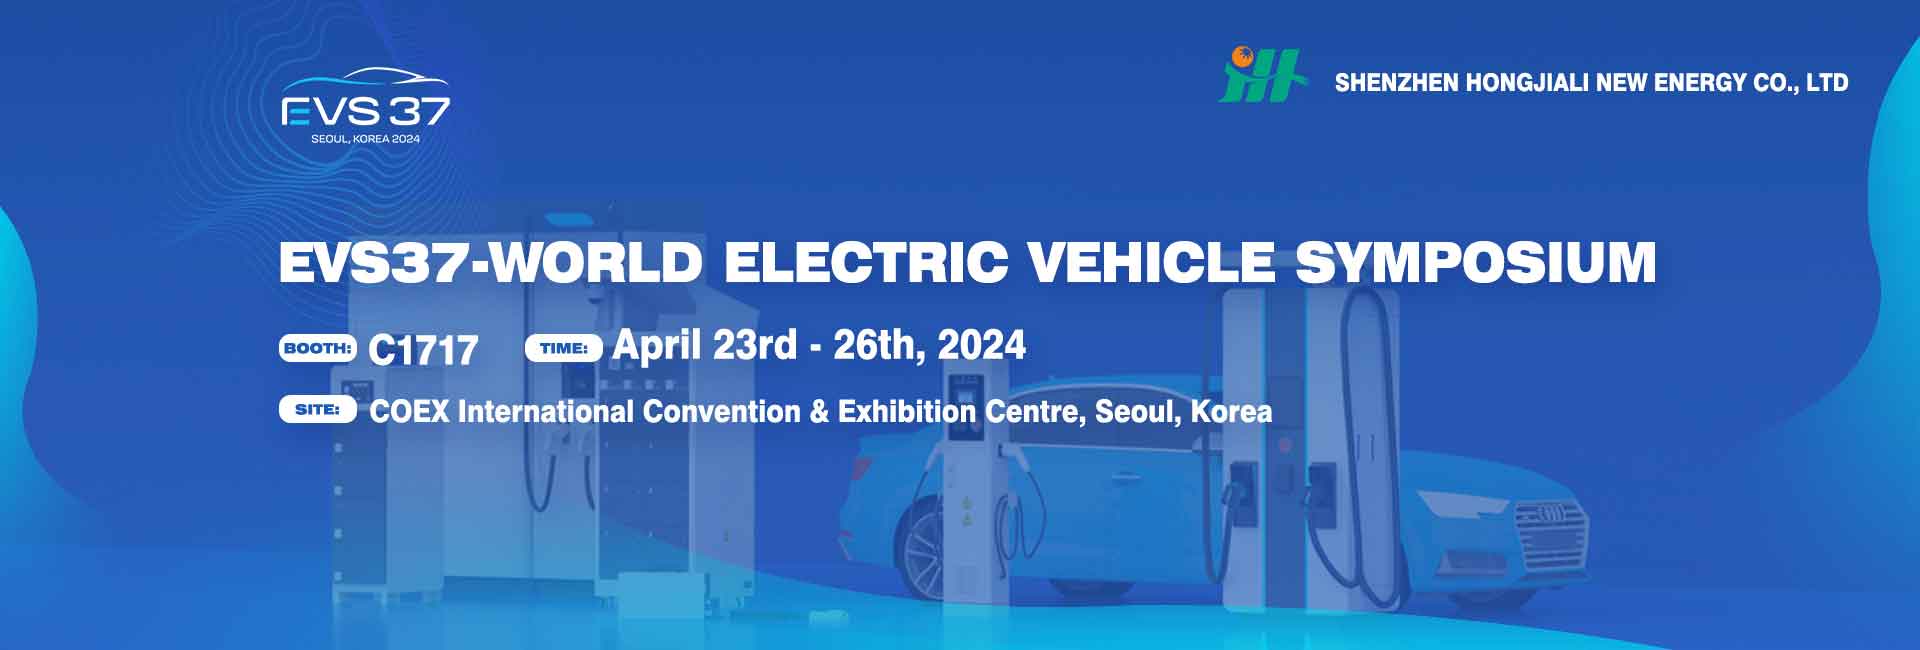 EVS37-World Electric Vehicle Symposium